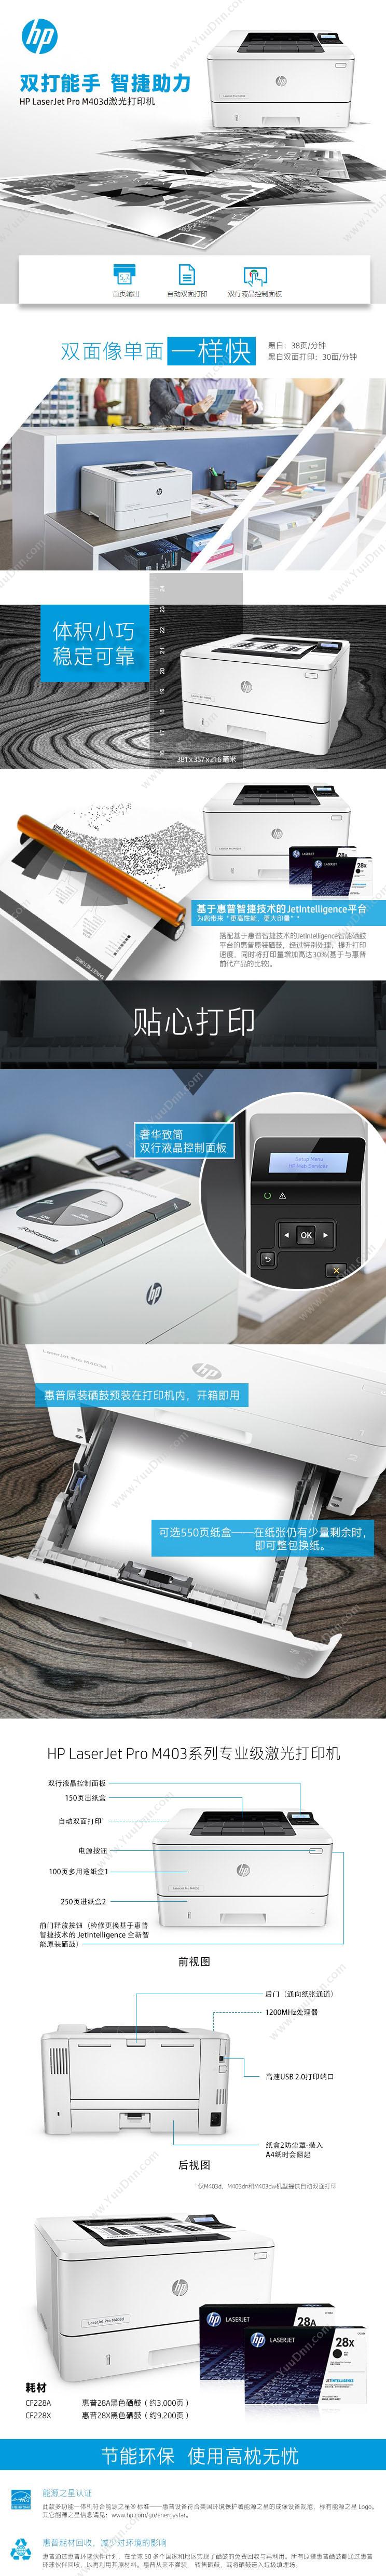 惠普 HP LaserJet Pro M403d   A4(黑白)激光双面快速打印机 1年保修  速度38 A4黑白激光打印机